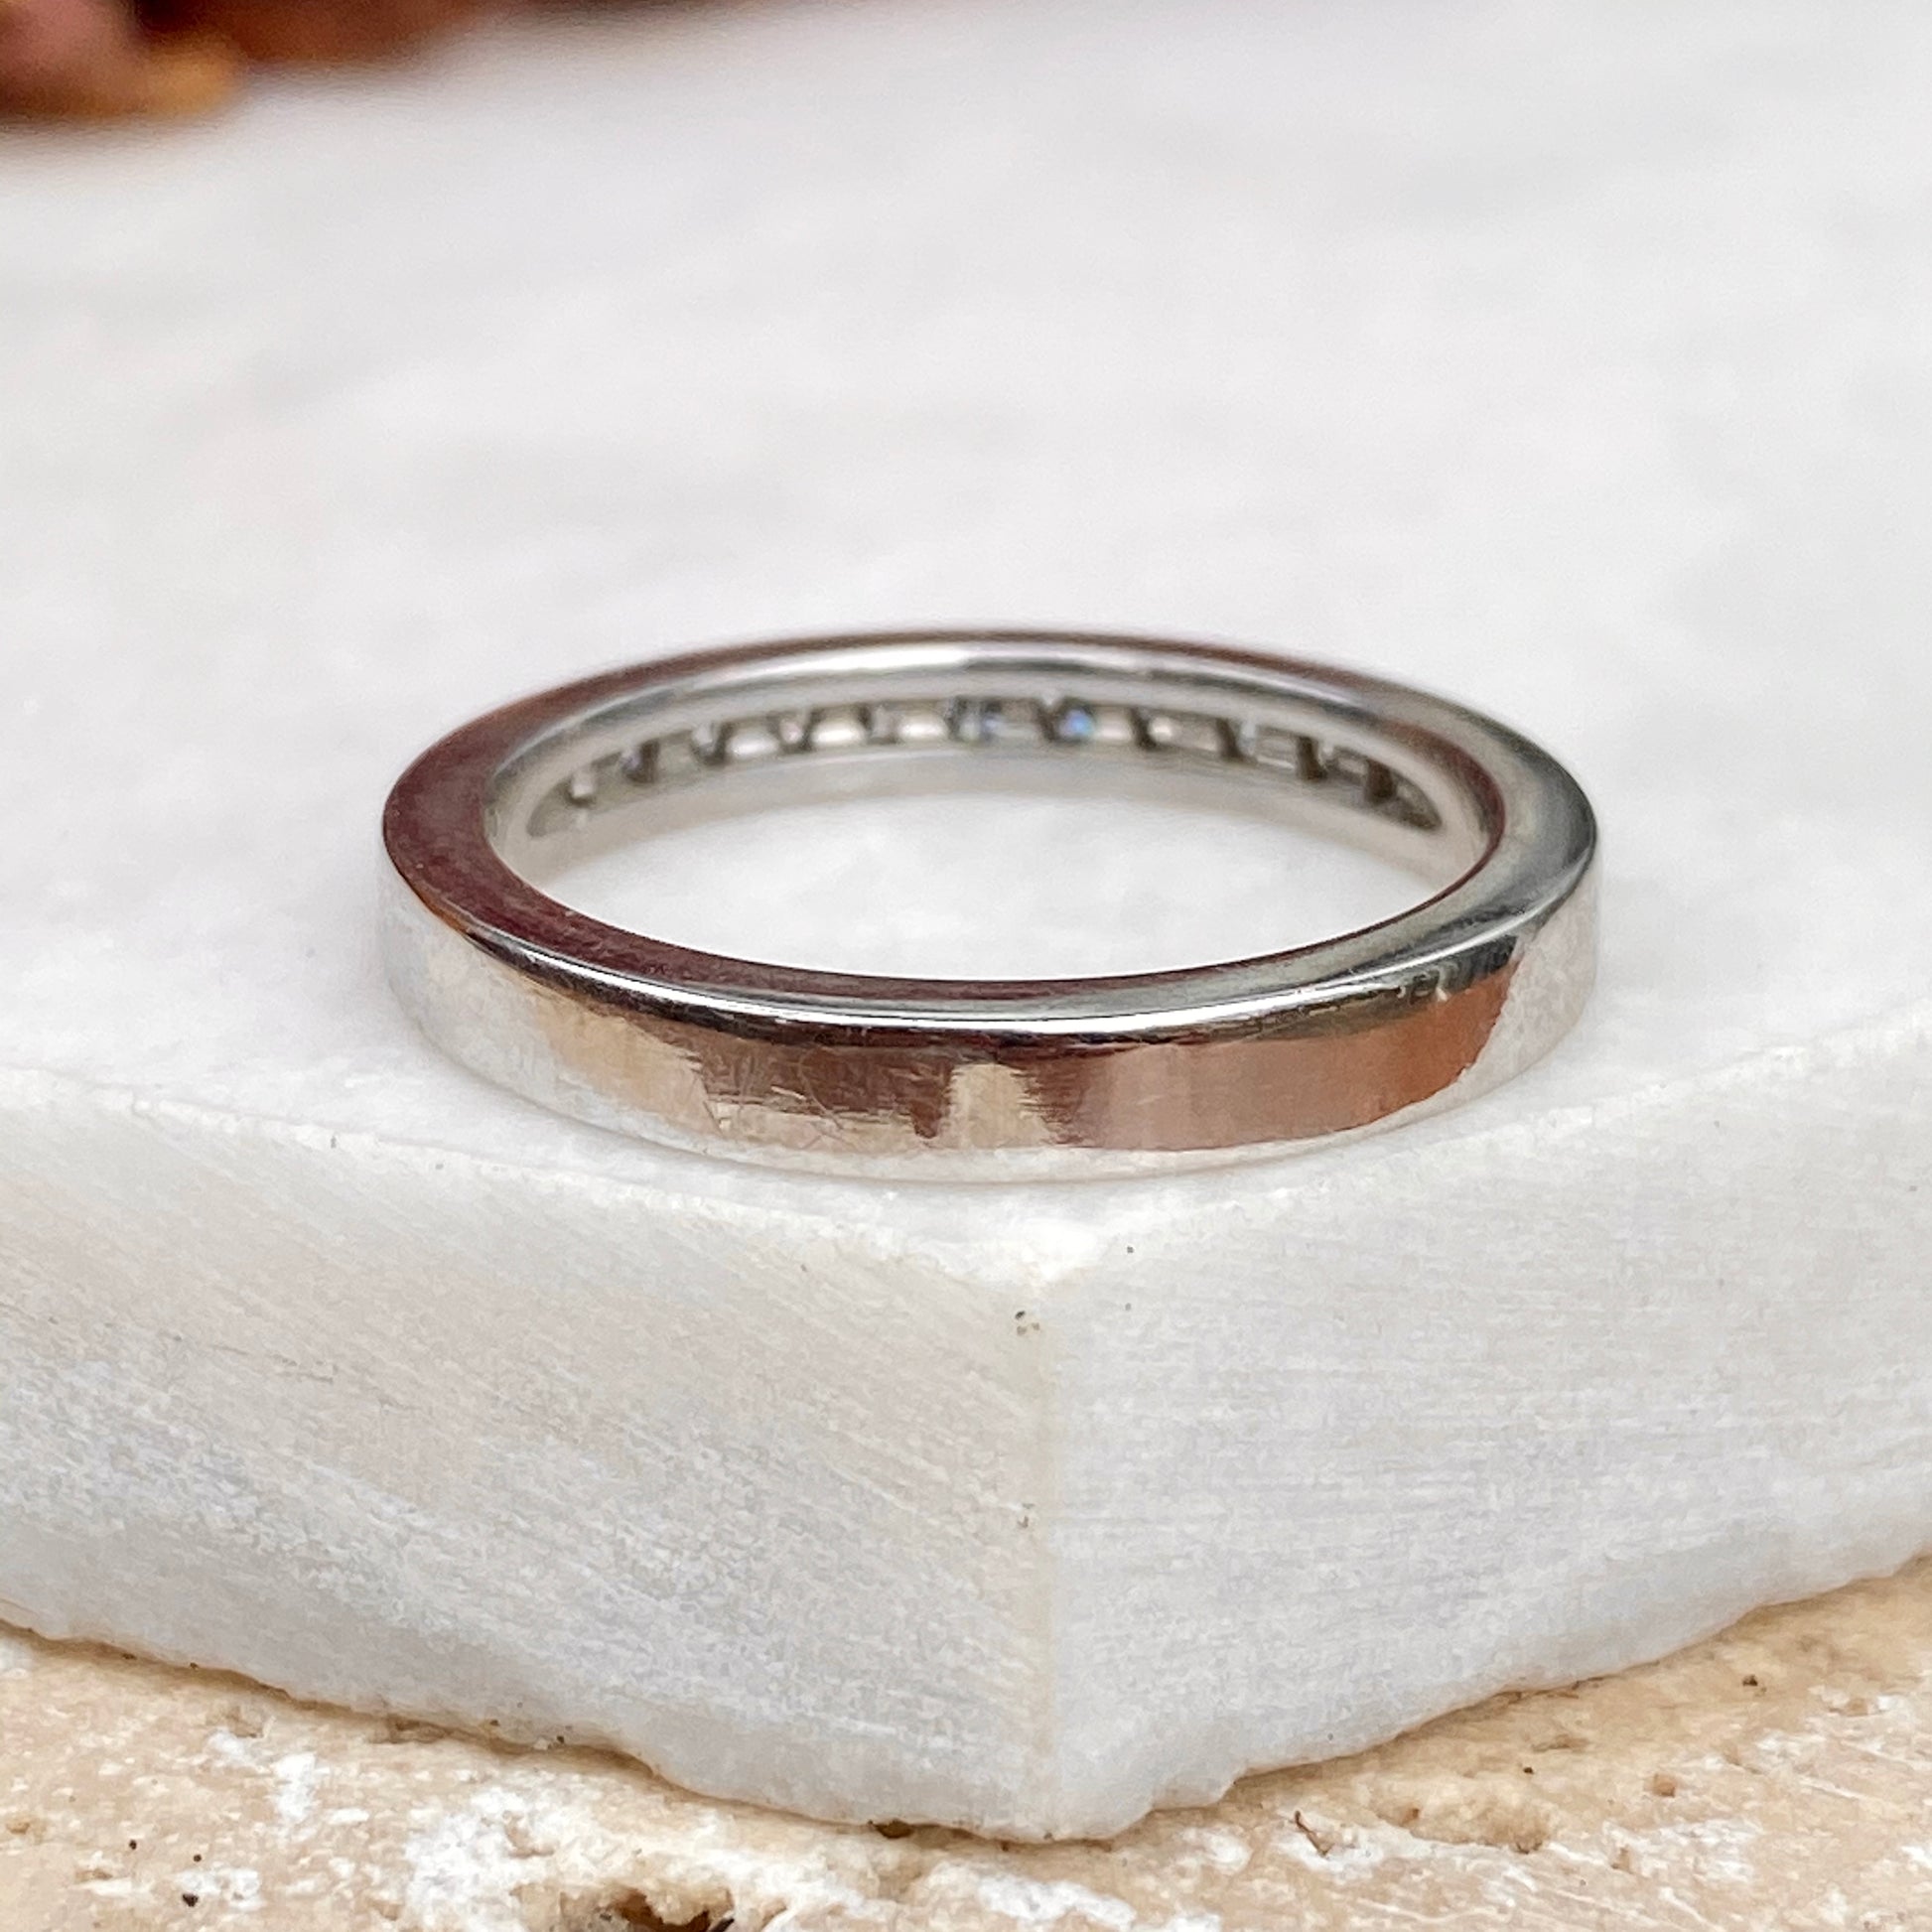 14KT White Gold Diamond Thin Band Ring, 14KT White Gold Diamond Thin Band Ring - Legacy Saint Jewelry